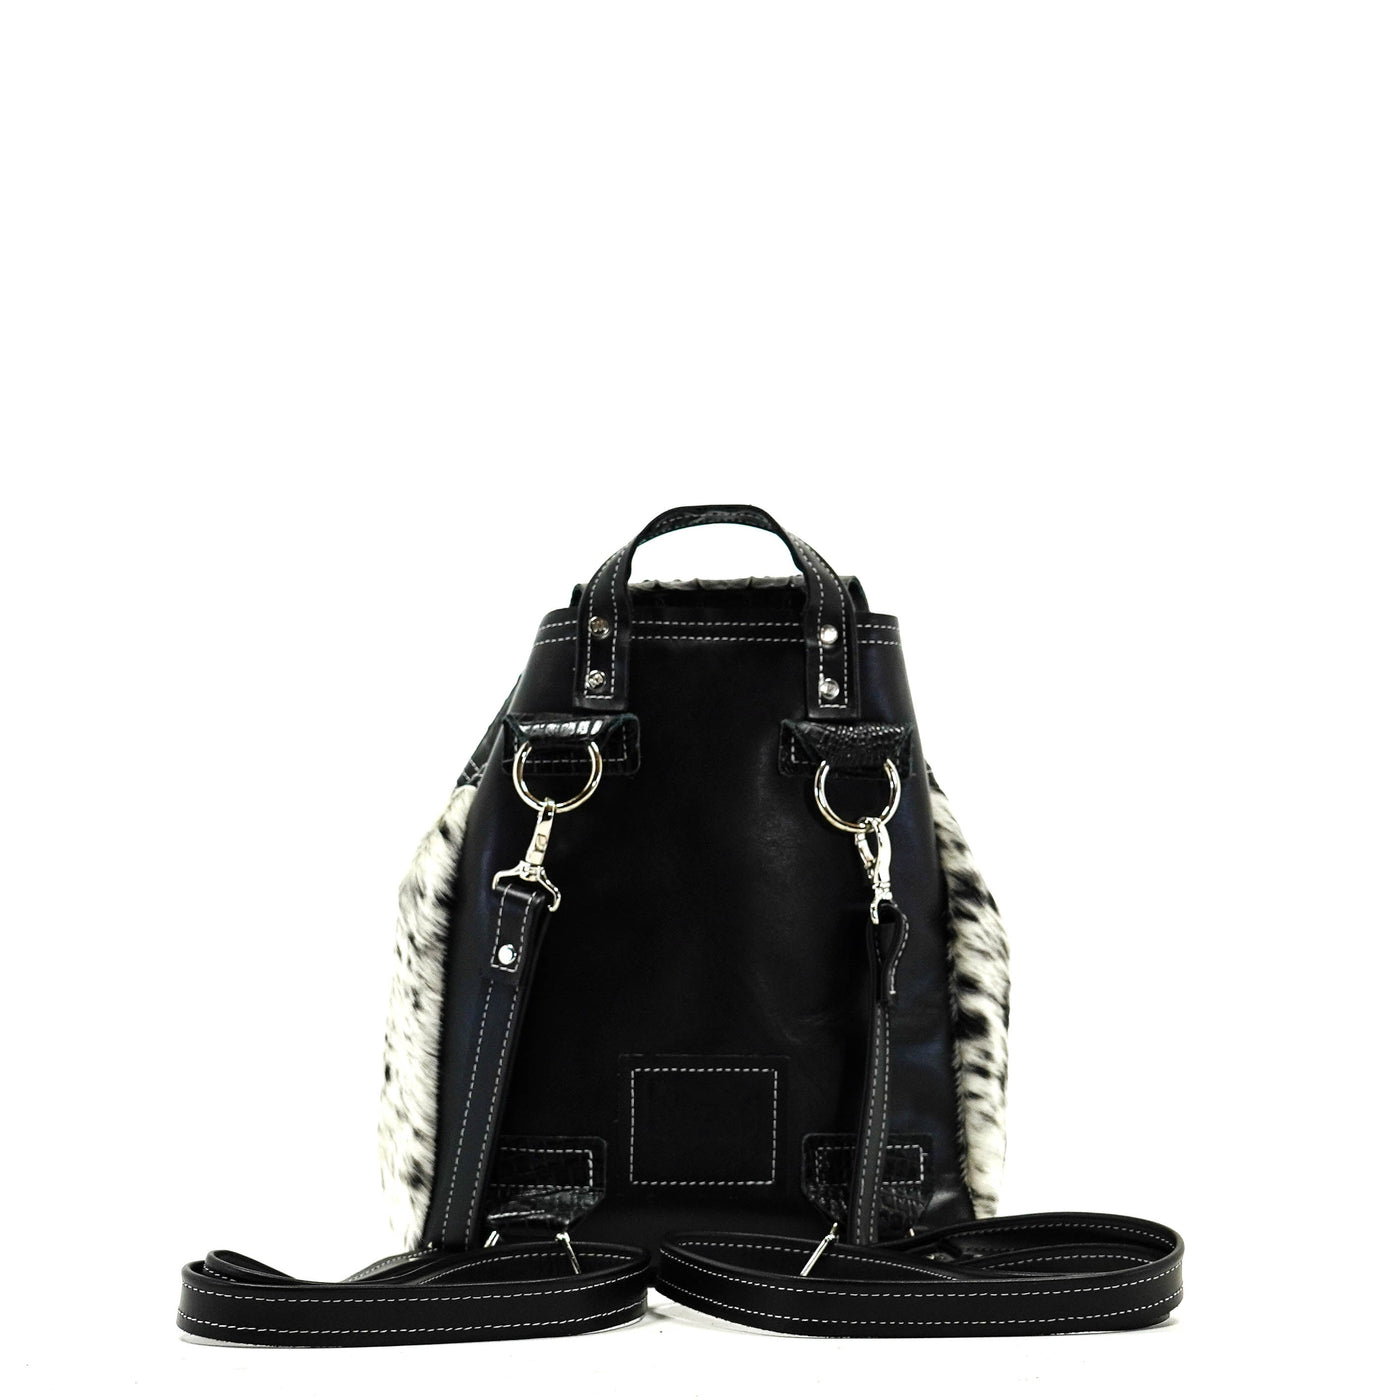 Mini Kelsea Backpack - Black & White w/ Onyx Croc-Mini Kelsea Backpack-Western-Cowhide-Bags-Handmade-Products-Gifts-Dancing Cactus Designs